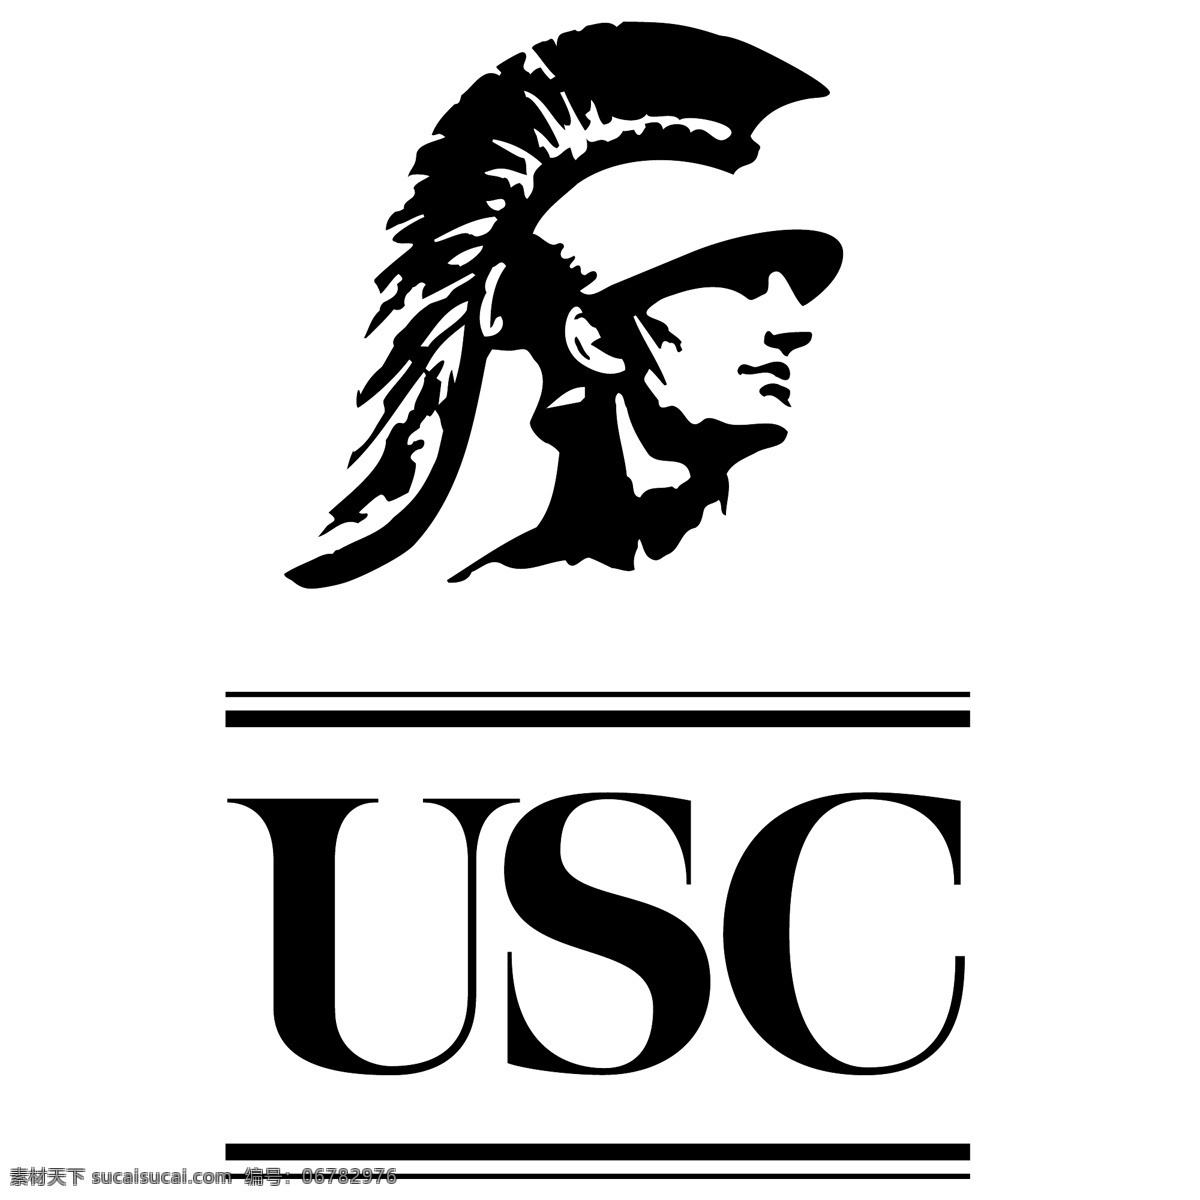 南加州 大学 自由 标志 标识 psd源文件 logo设计